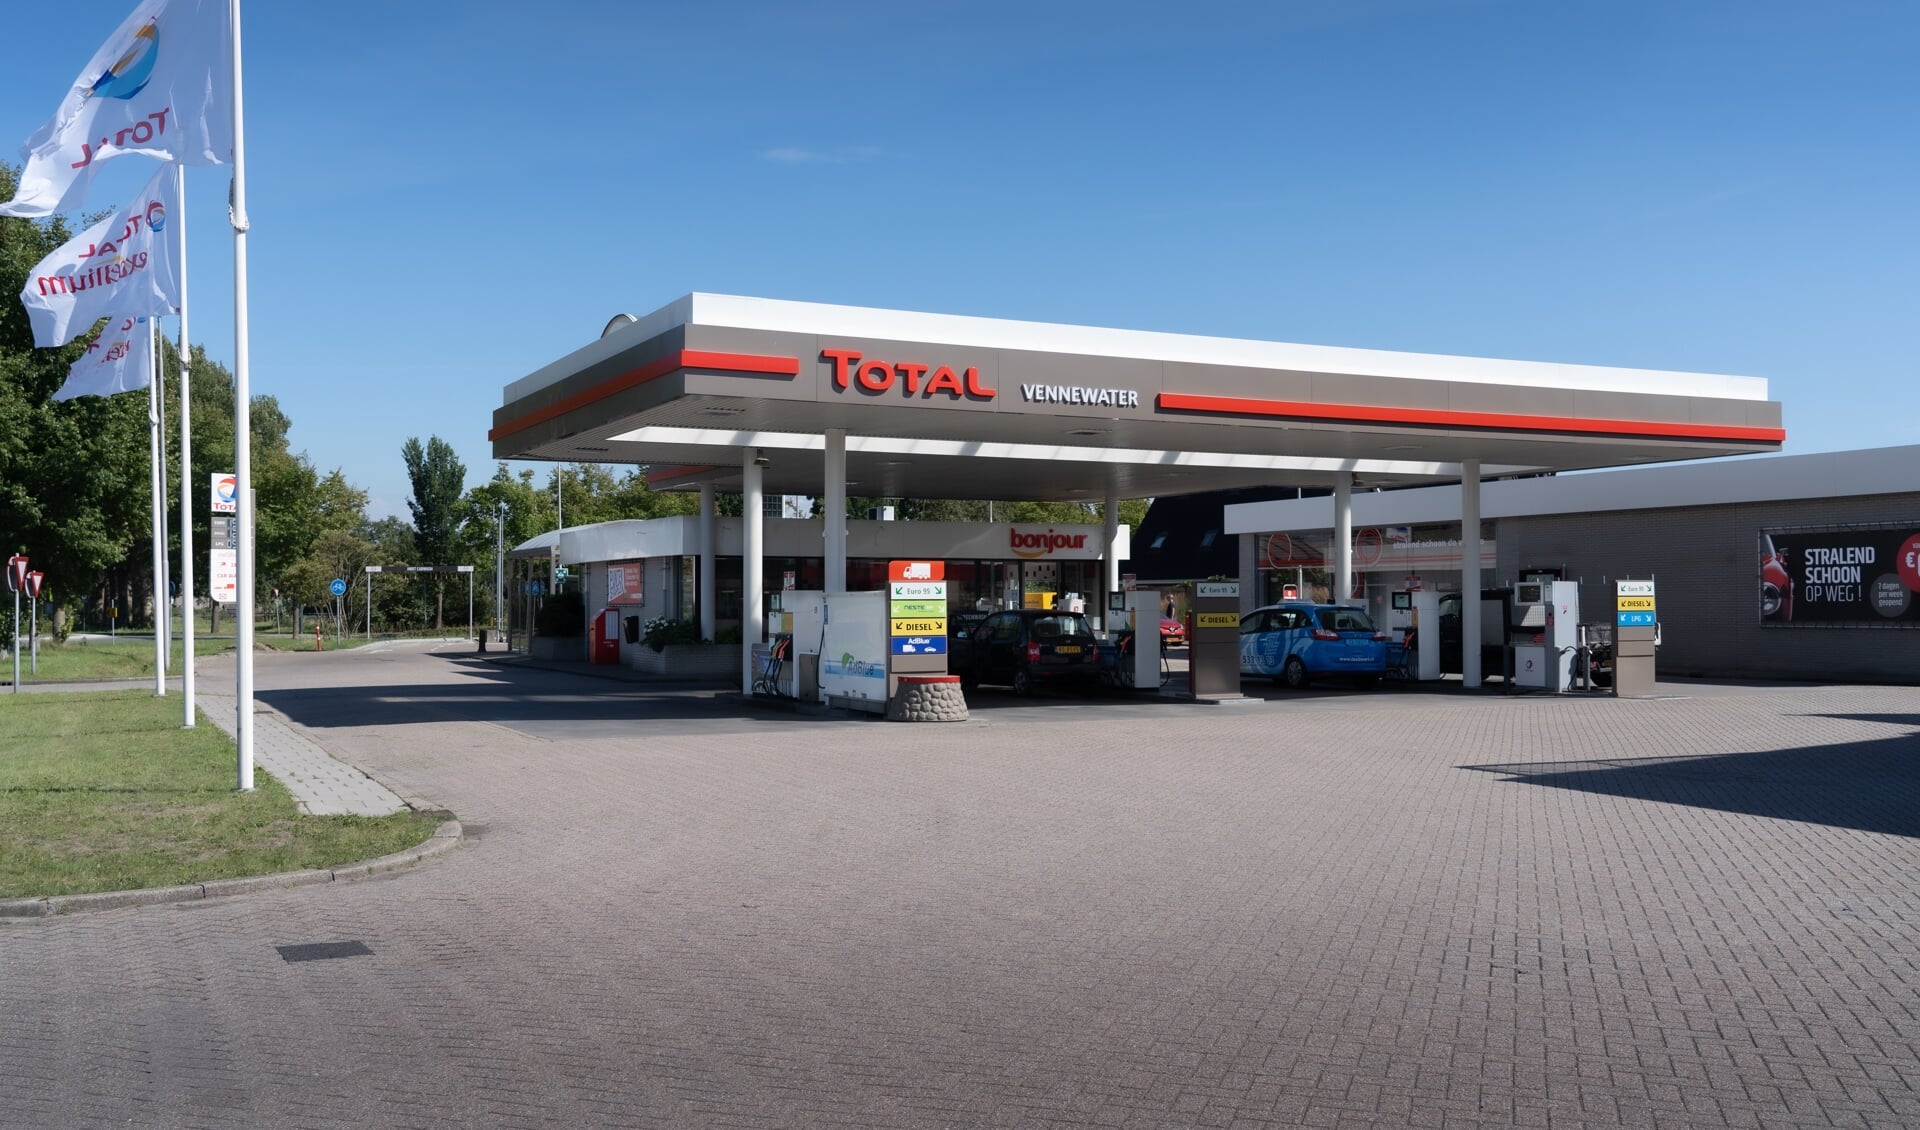 GP Groot brandstoffen en oliehandel heeft deze week de omkleuring van het Texaco tankstation in Heiloo naar het merk Total afgerond.